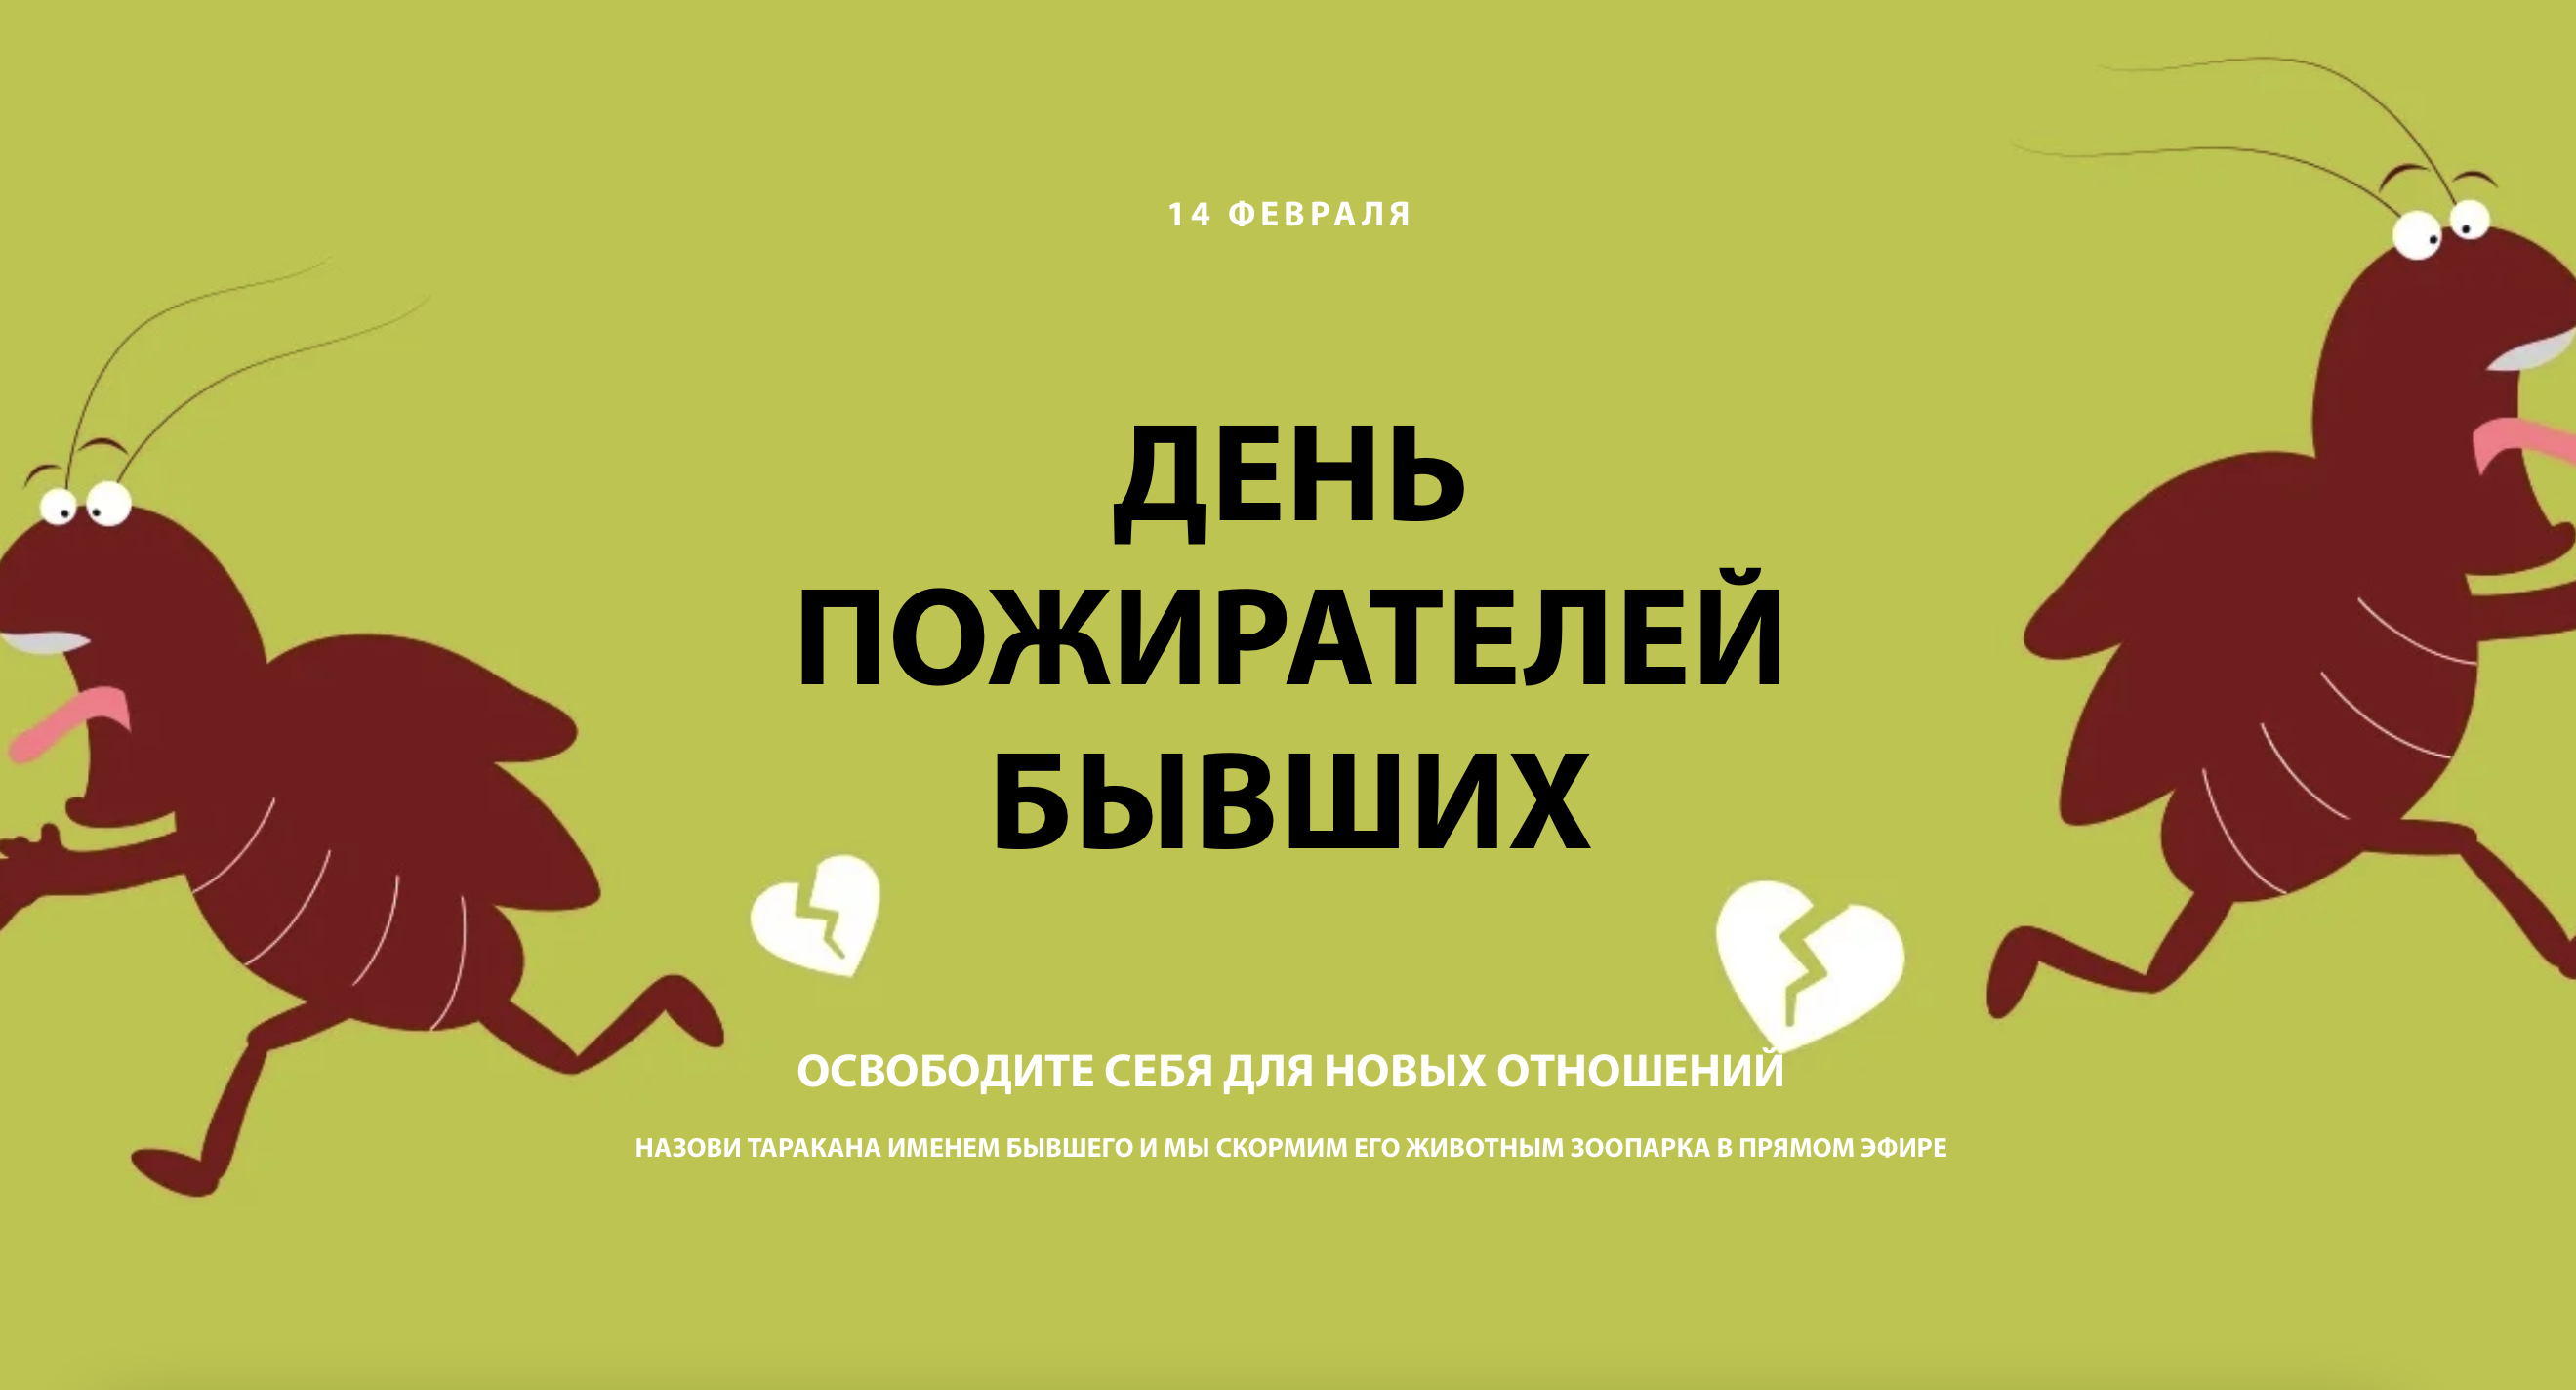 Скриншот анонса акции «День пожирателей бывших» на сайте Екатеринбургского зоопарка